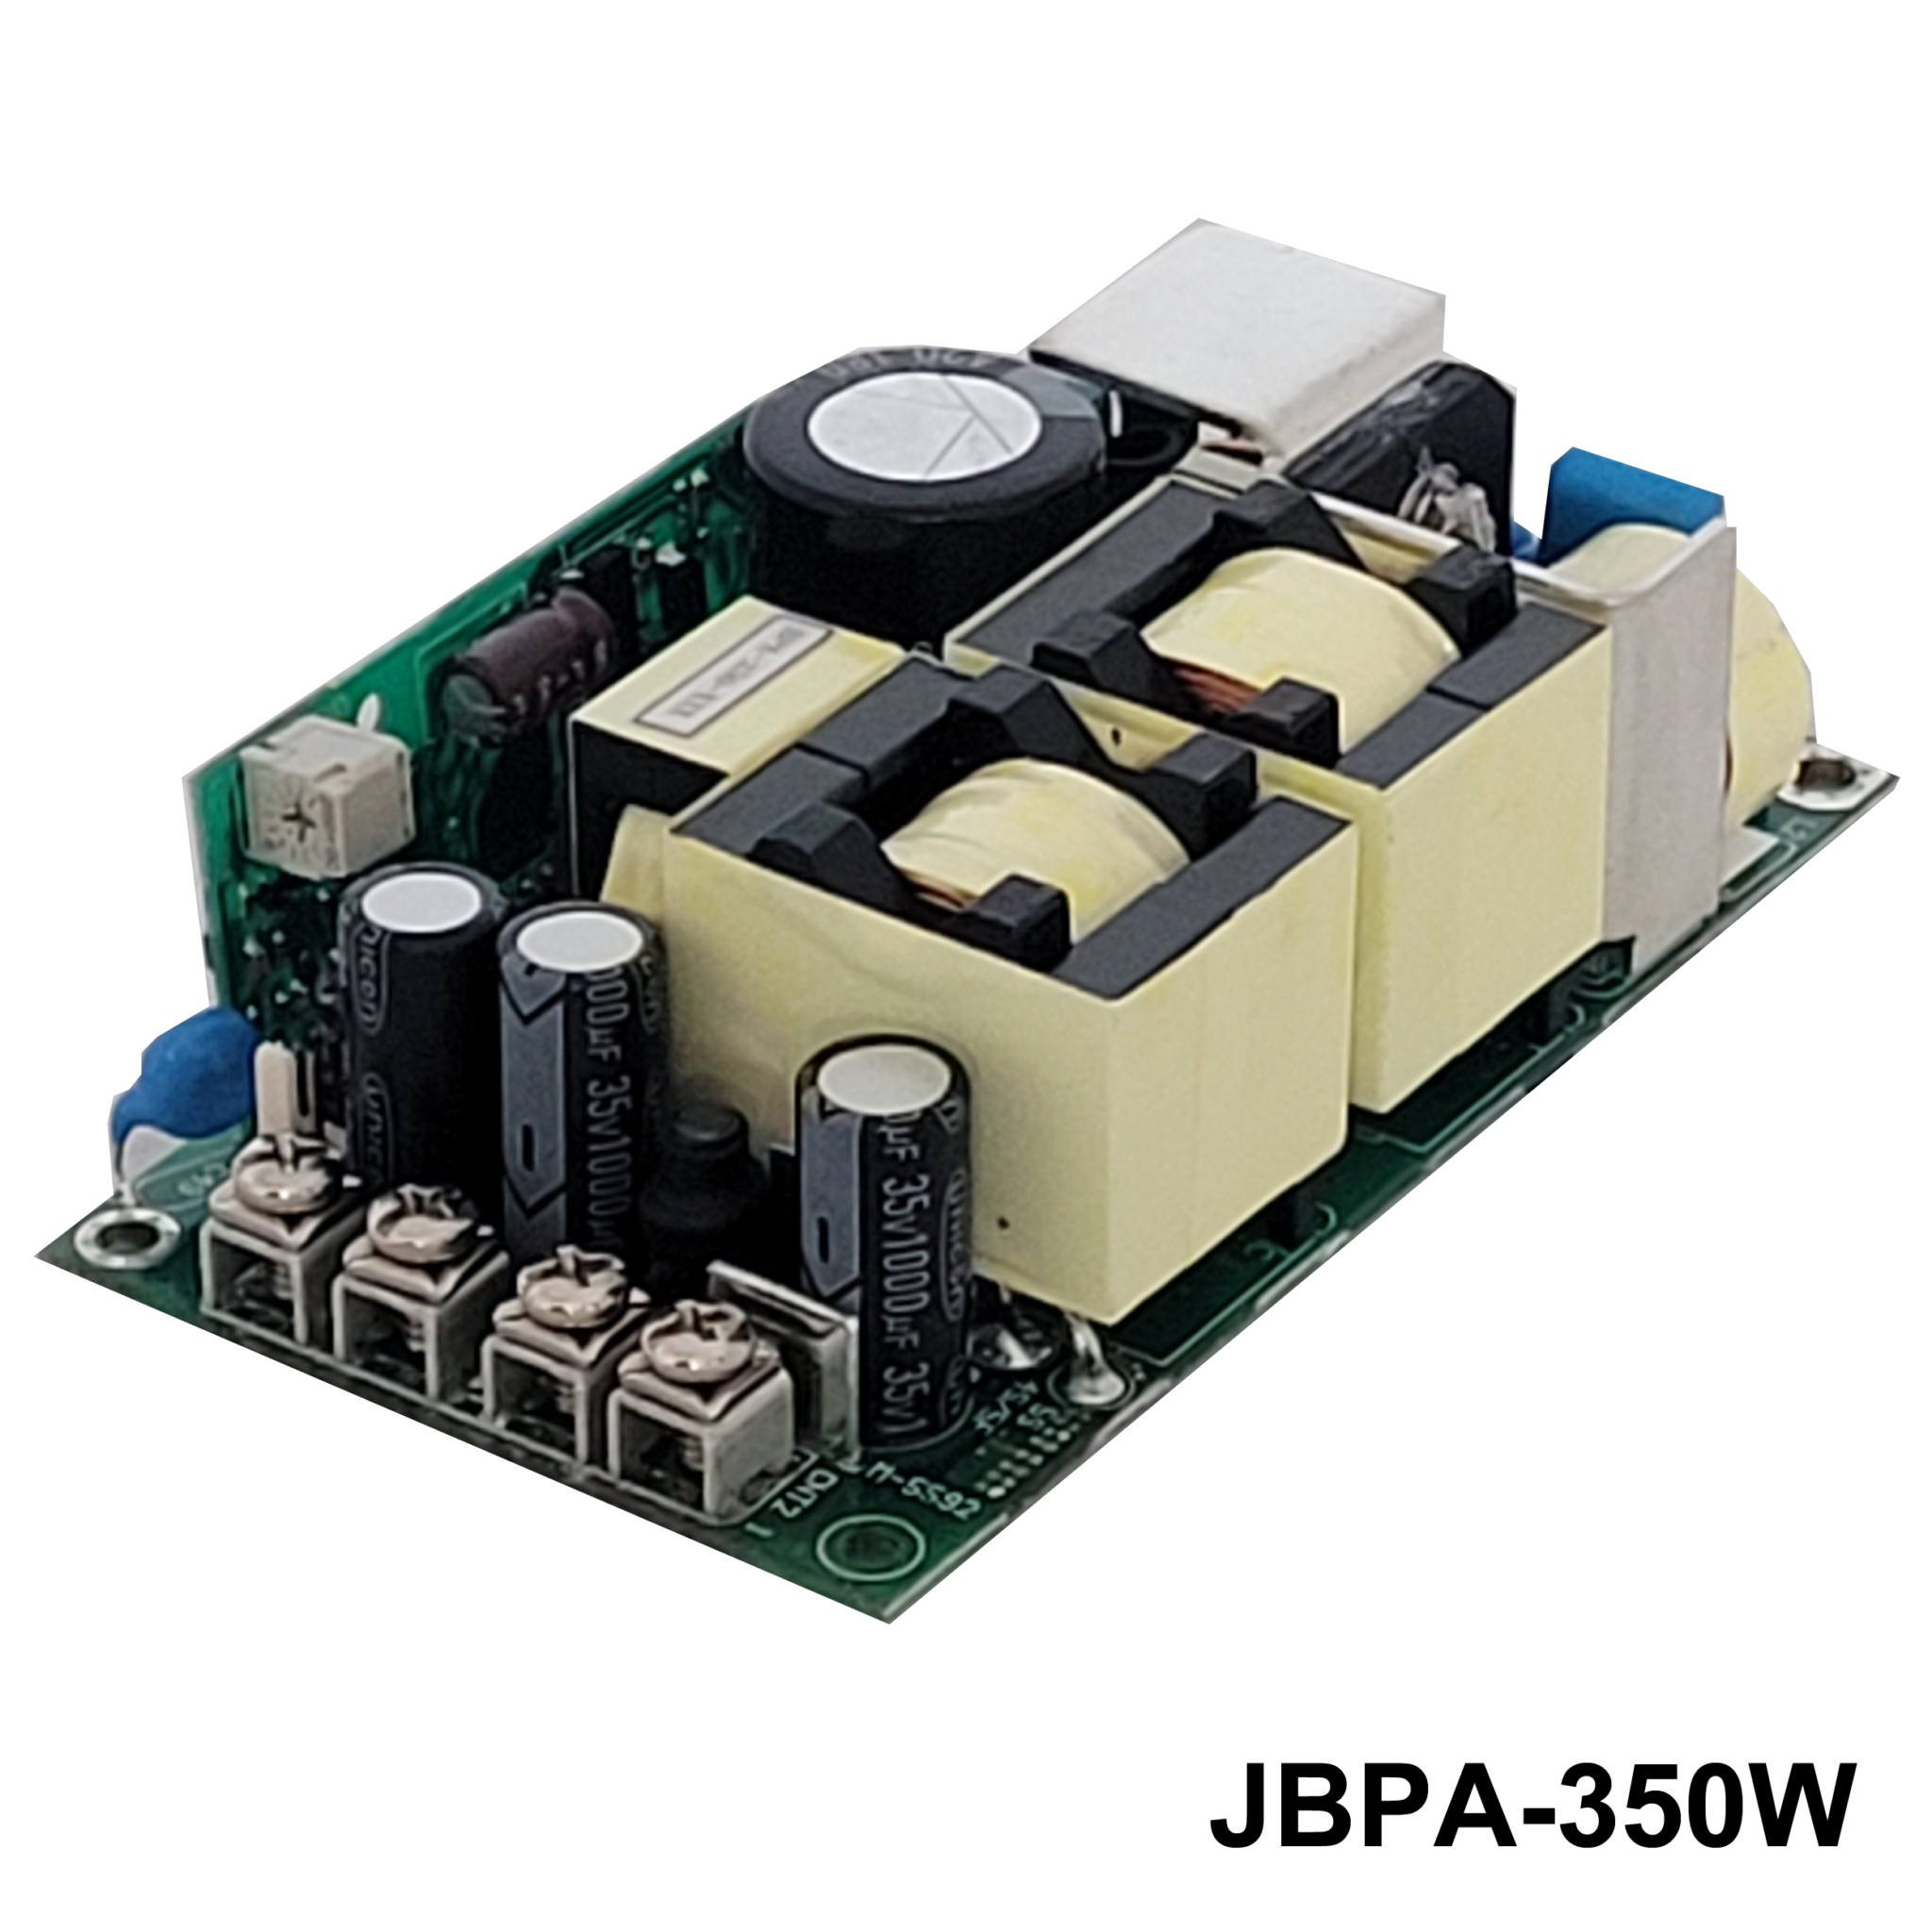 JBPA-350WSeries3